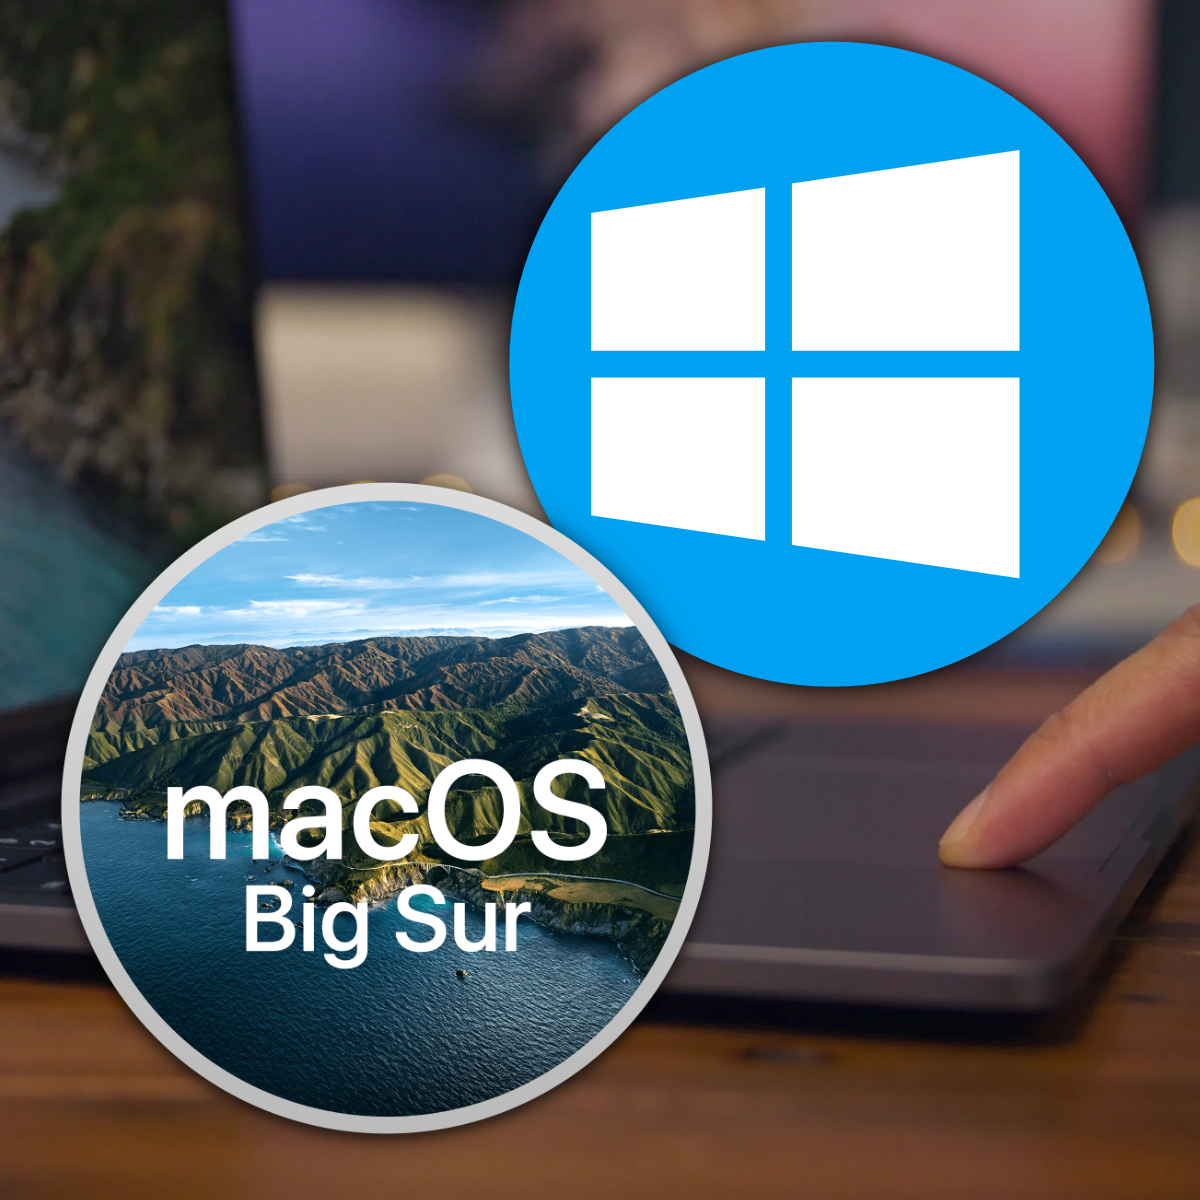 Как установить Windows 10 на macOS 11 Big Sur. Пошаговая инструкция